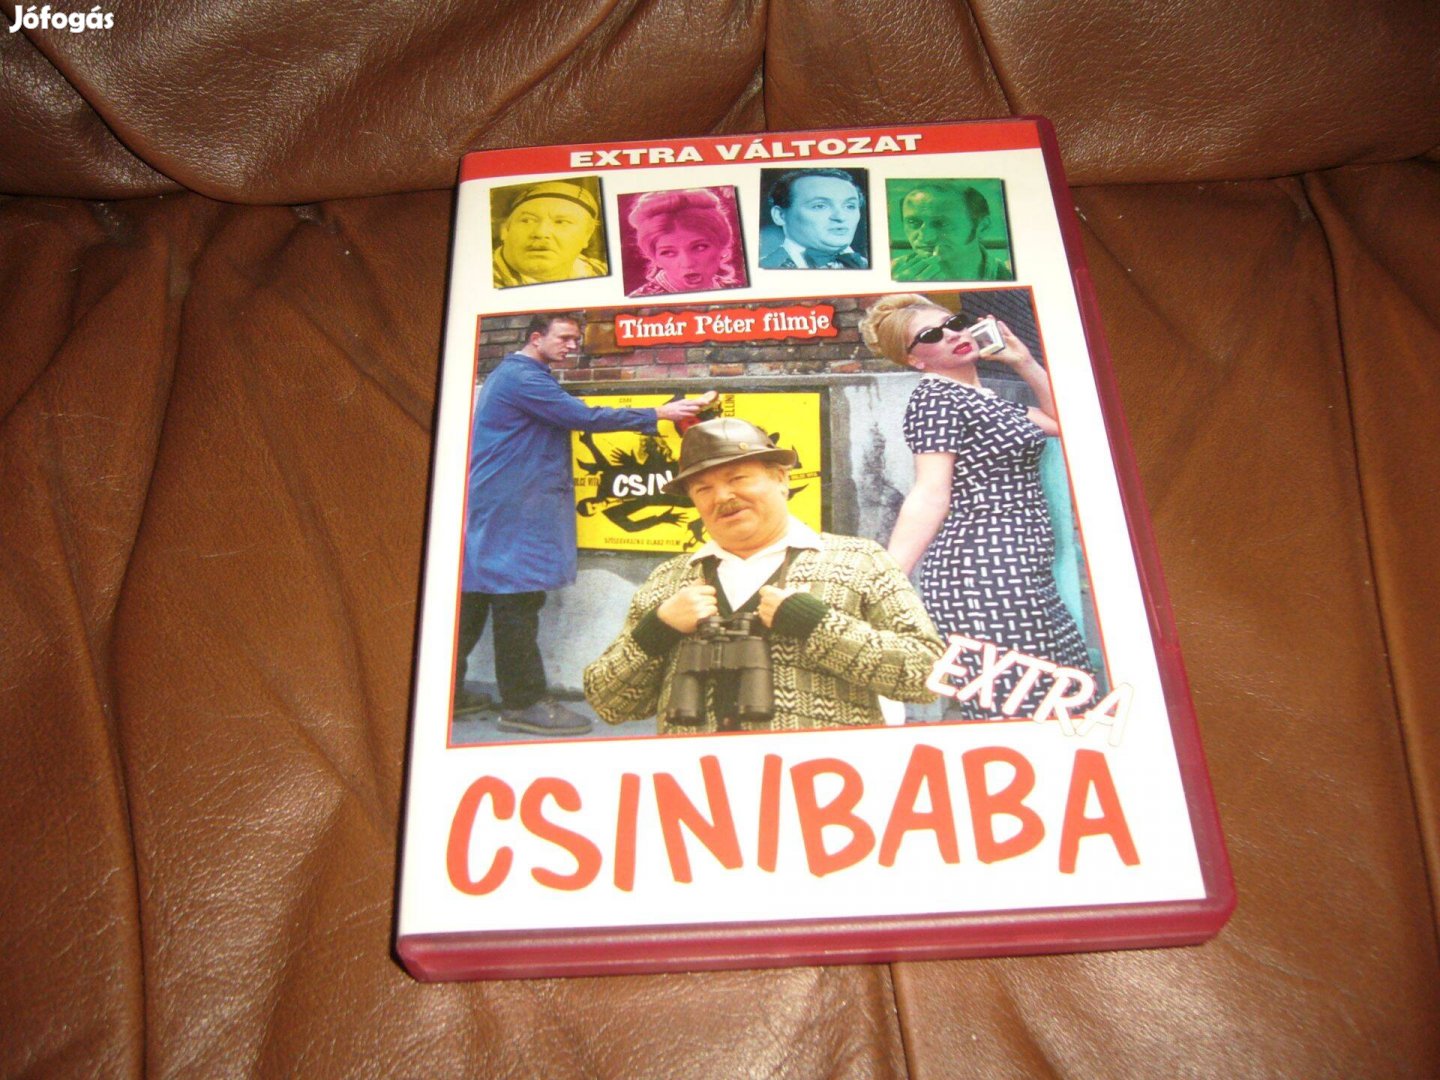 Csinibaba . dvd film , Új extra változat. filmek